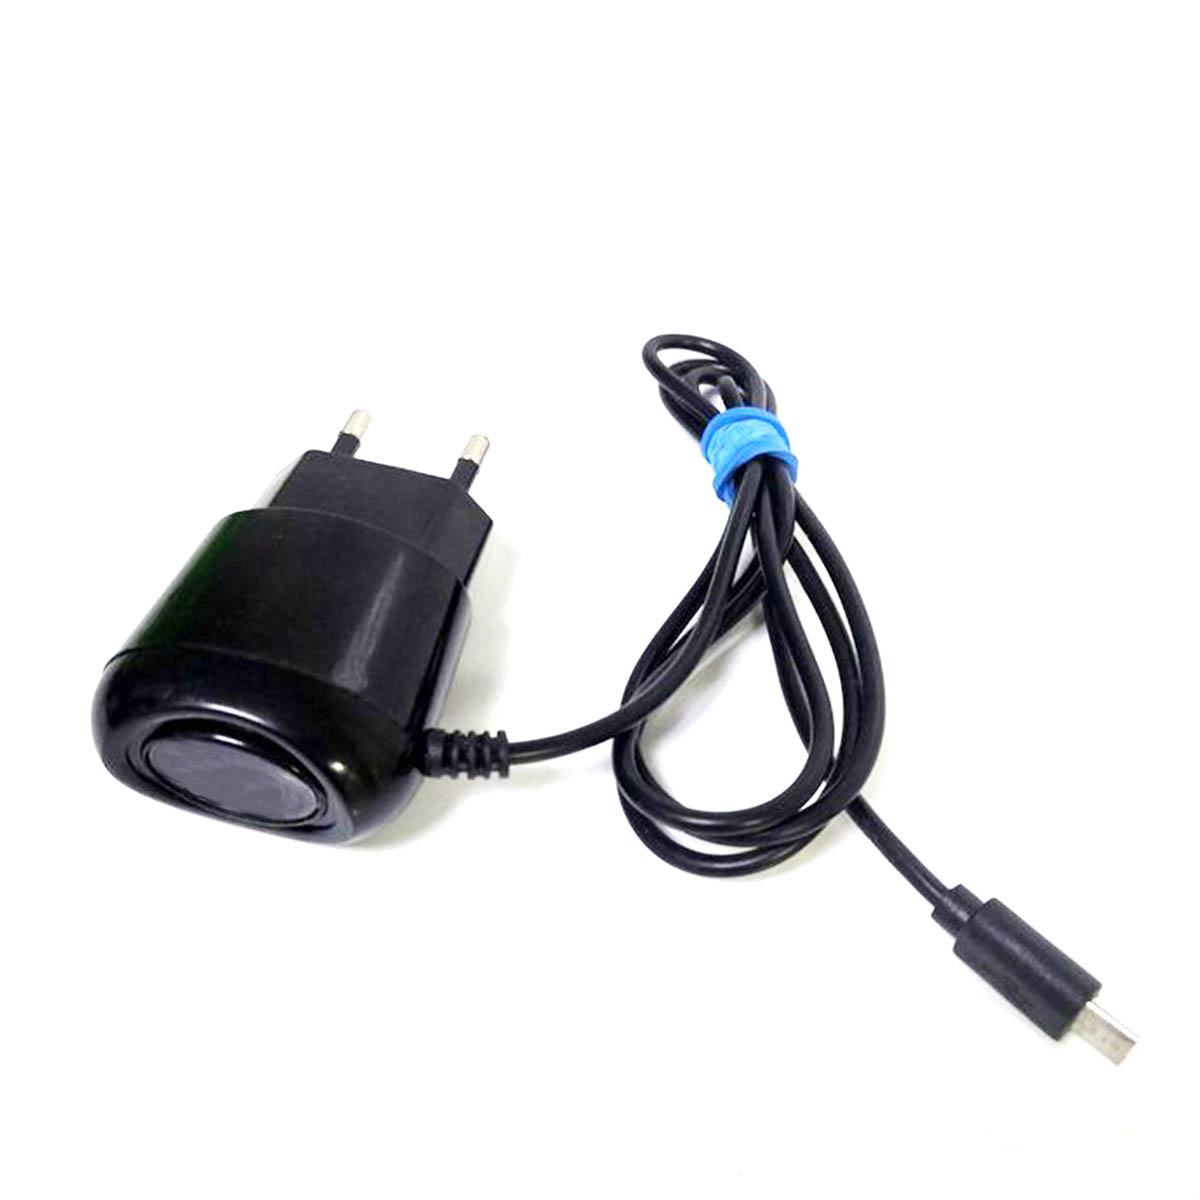 СЗУ (Сетевое зарядное устройство) GREEN 5S с кабелем Micro USB, цвет черный